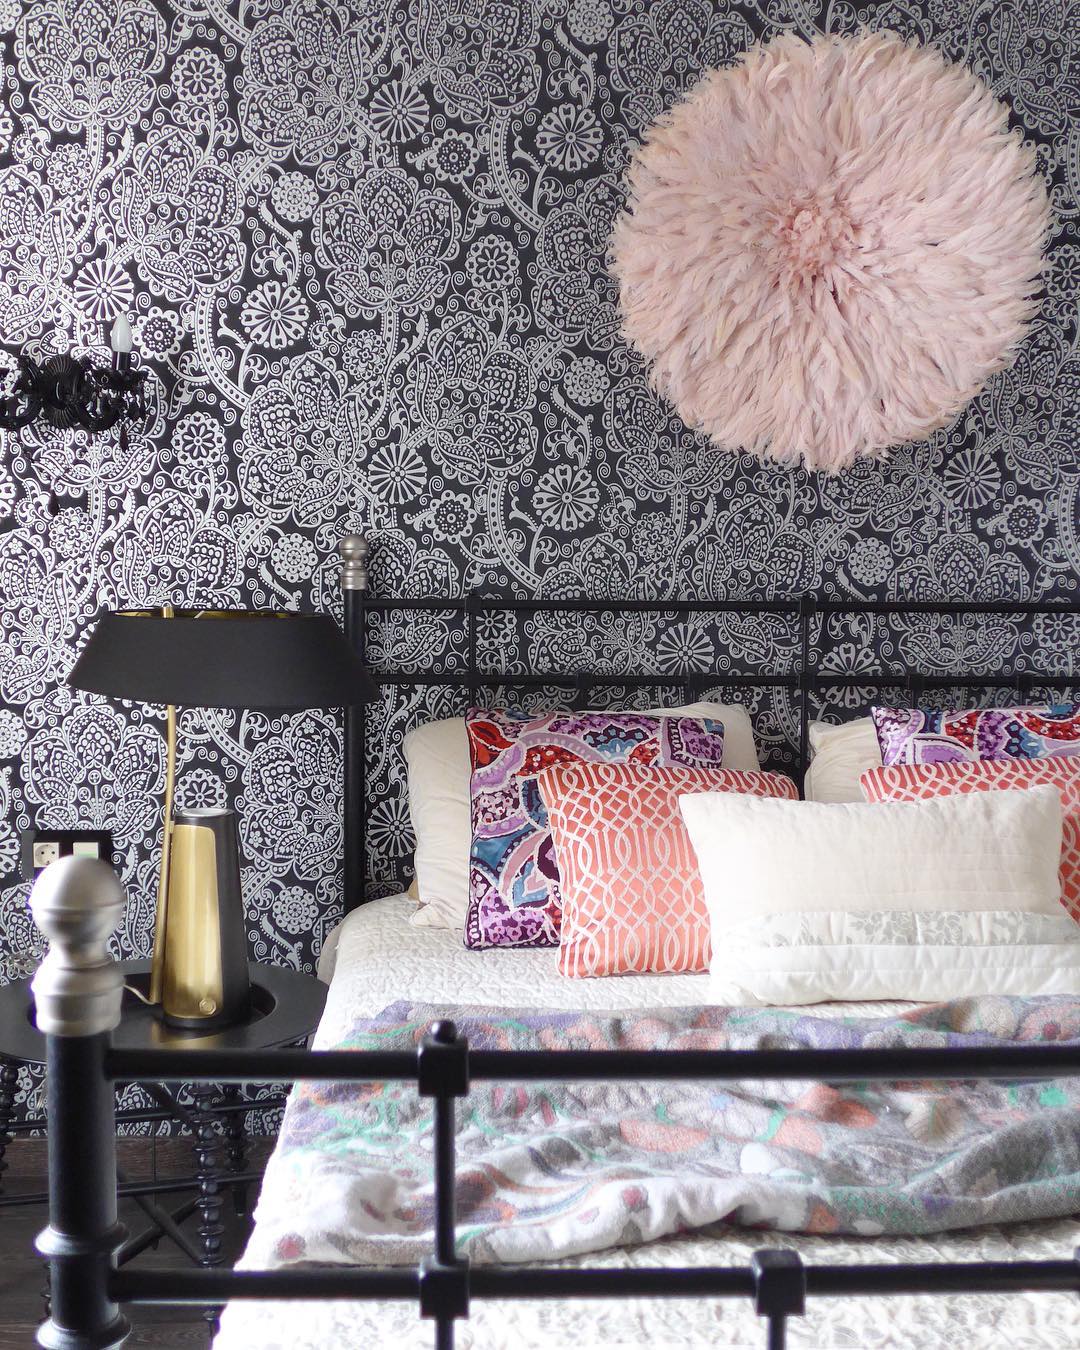 Дизайн спальни фото с идеями оформления из книги «Дом мечты»